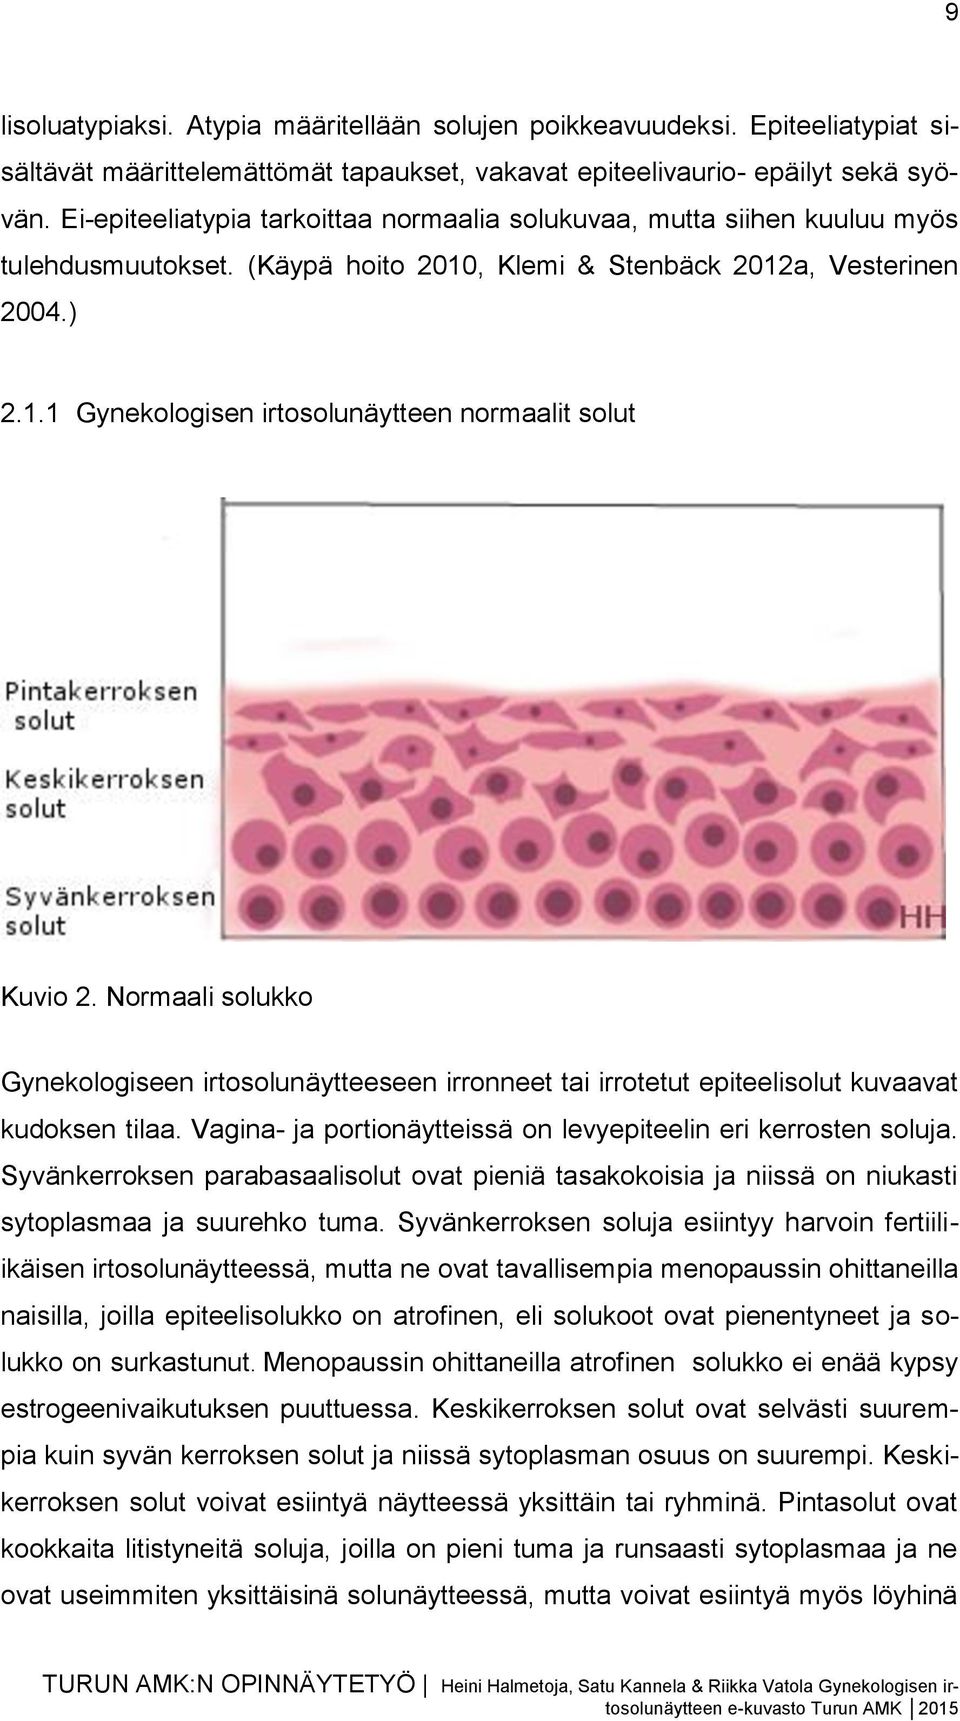 Normaali solukko Gynekologiseen irtosolunäytteeseen irronneet tai irrotetut epiteelisolut kuvaavat kudoksen tilaa. Vagina- ja portionäytteissä on levyepiteelin eri kerrosten soluja.